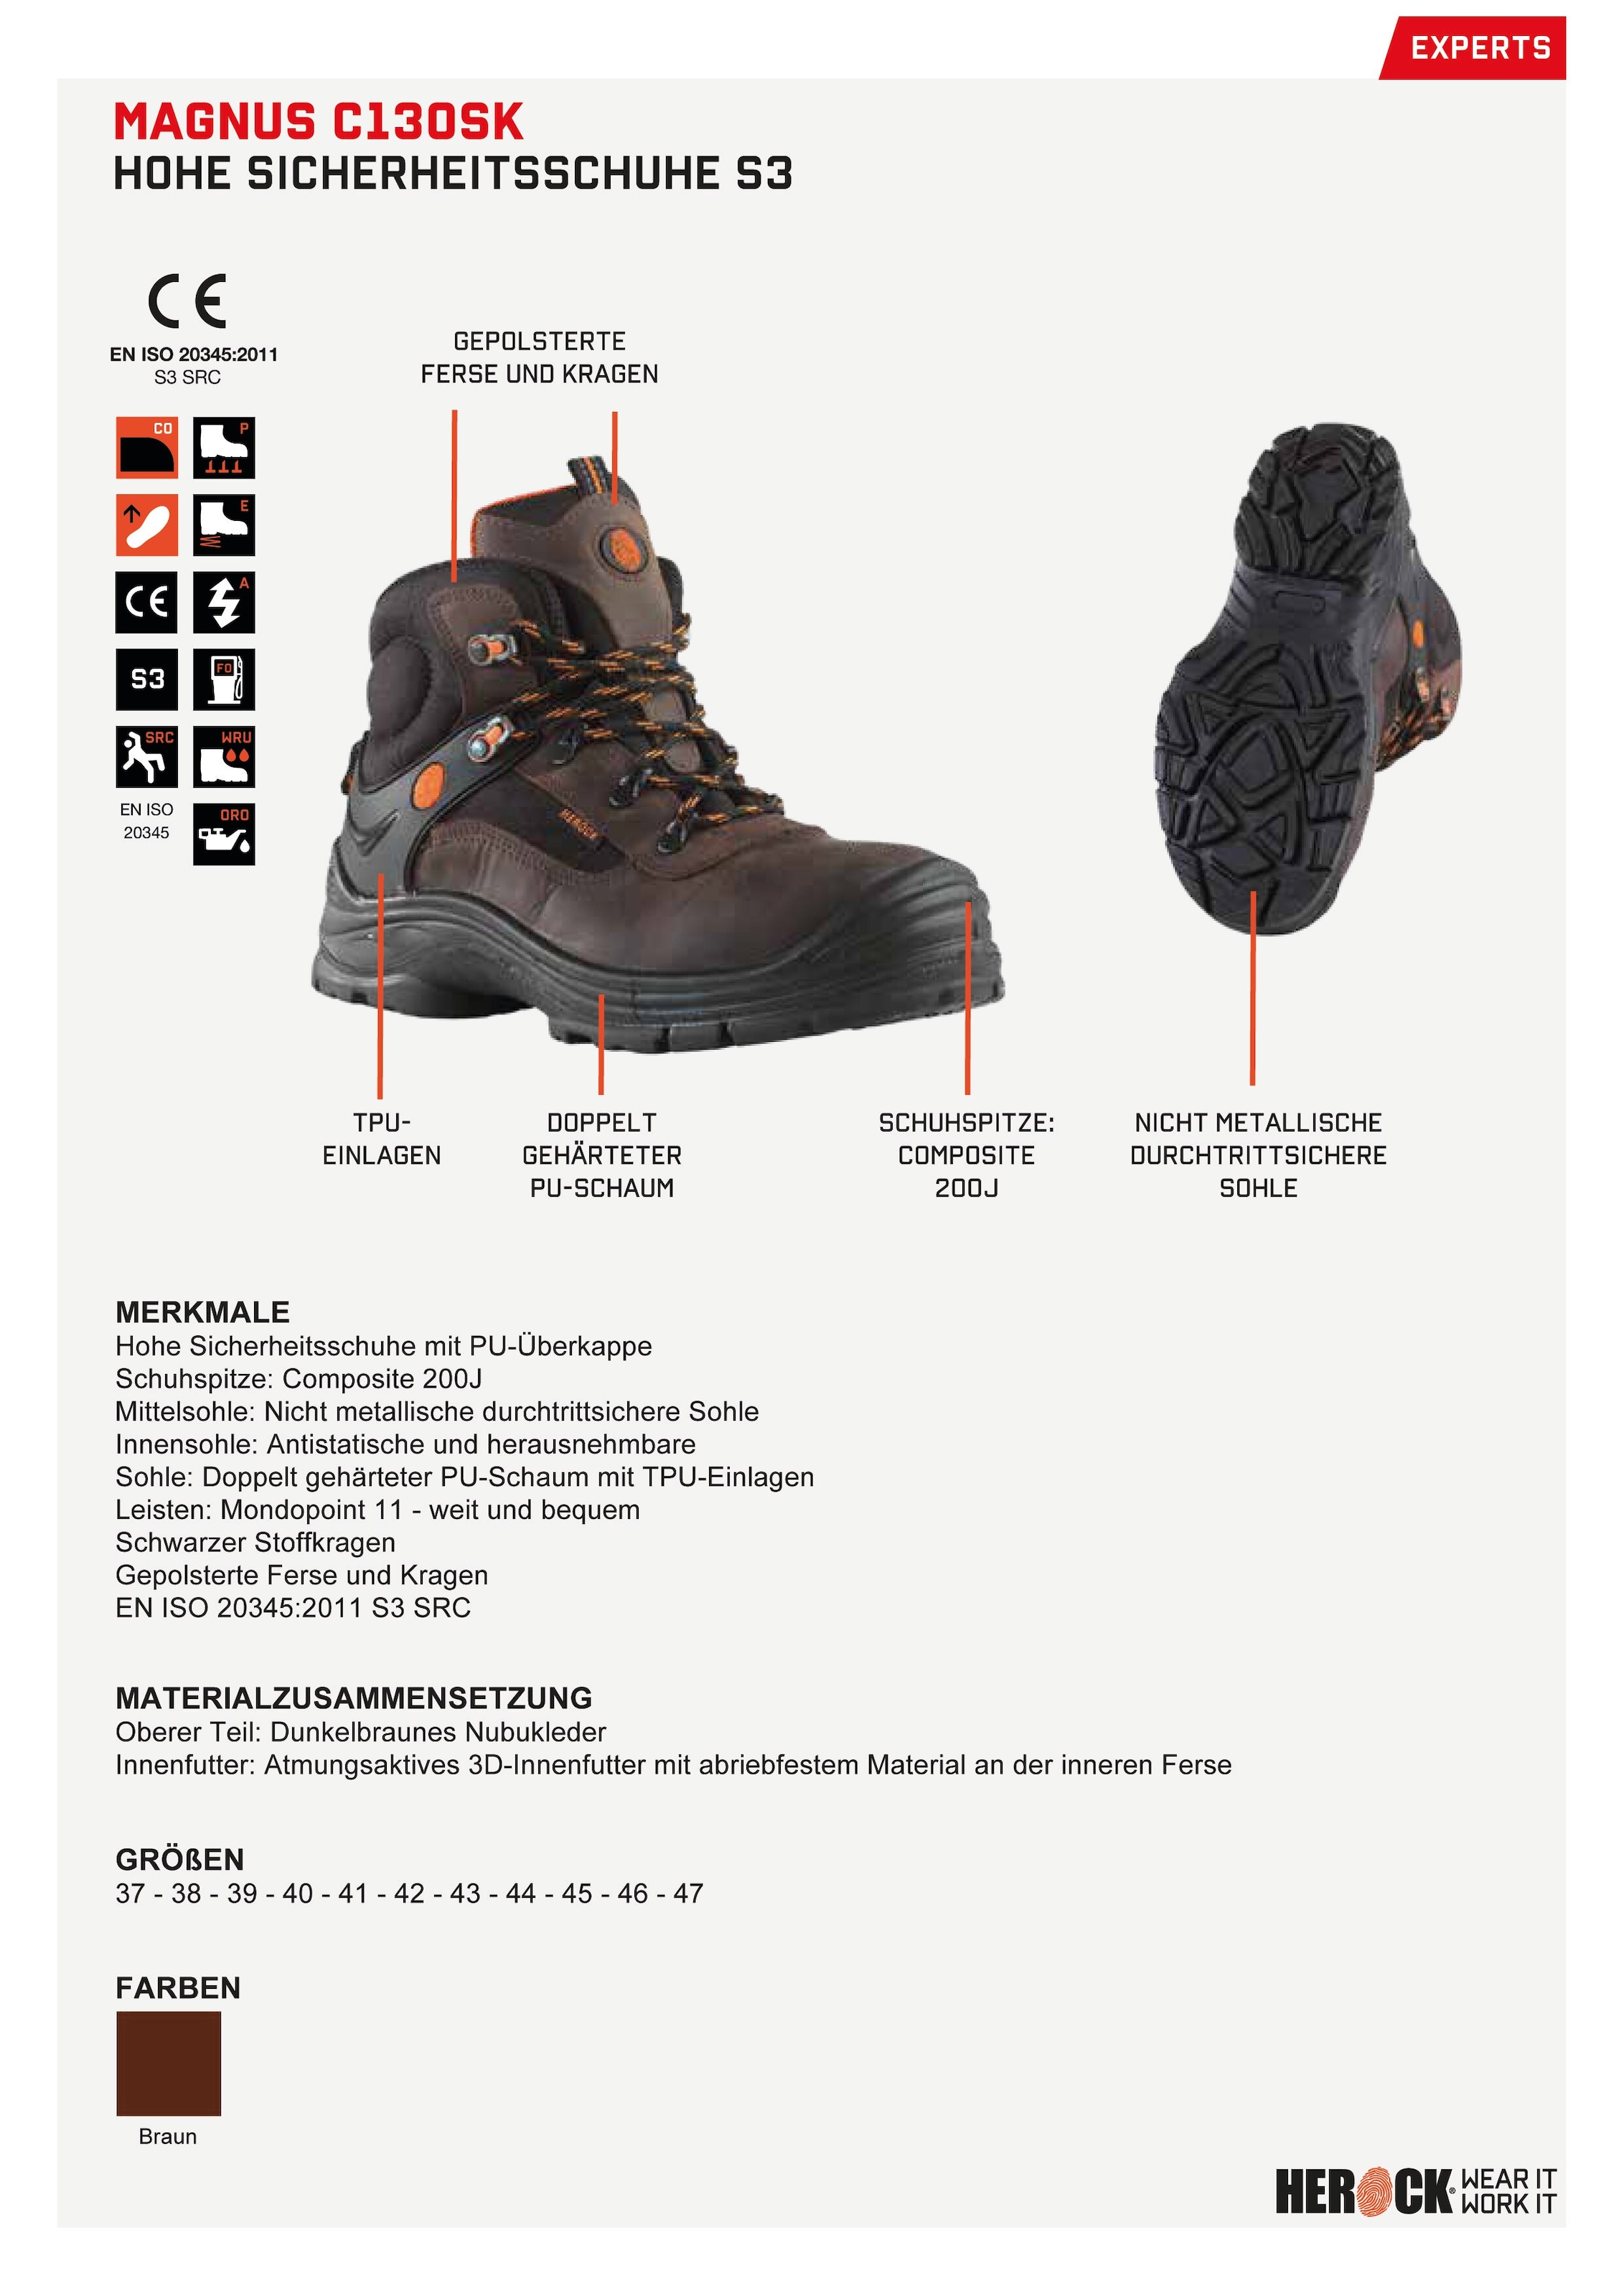 online Schuhe«, Leder, High Klasse bestellen weit, Echtes Sicherheitsschuh »Magnus Compo S3 nicht-metallisch, durchtrittsicher, Herock S3